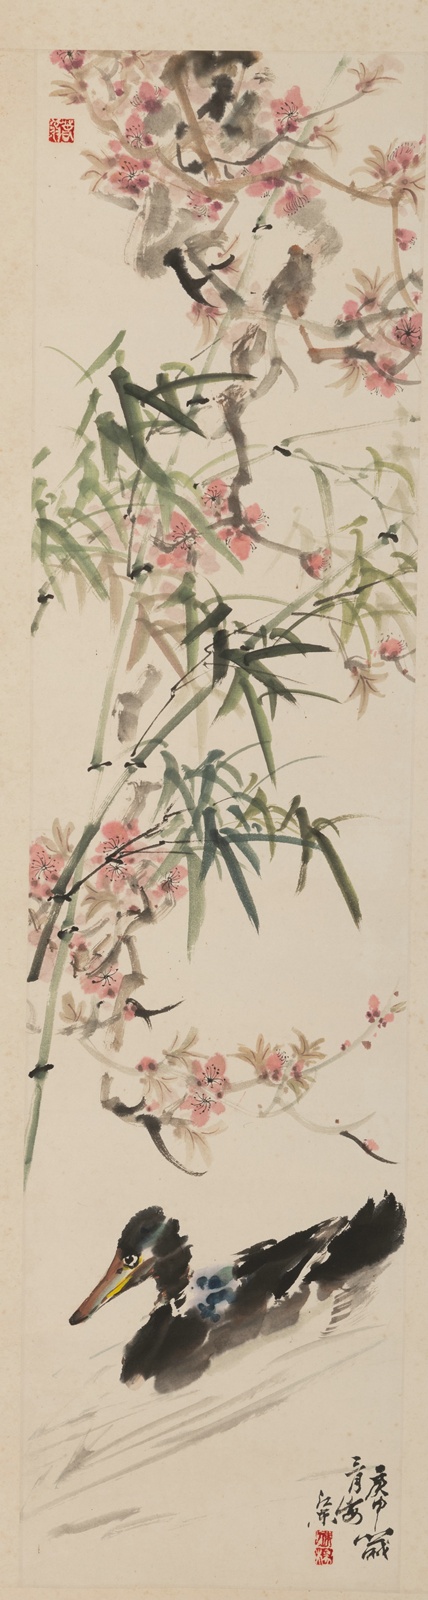 <b>Zwei Malereien auf Papier: Kraniche über einer Kiefer bzw. Ente im Wasser unter Bambus und blühendem Pfirsichbaum</b>